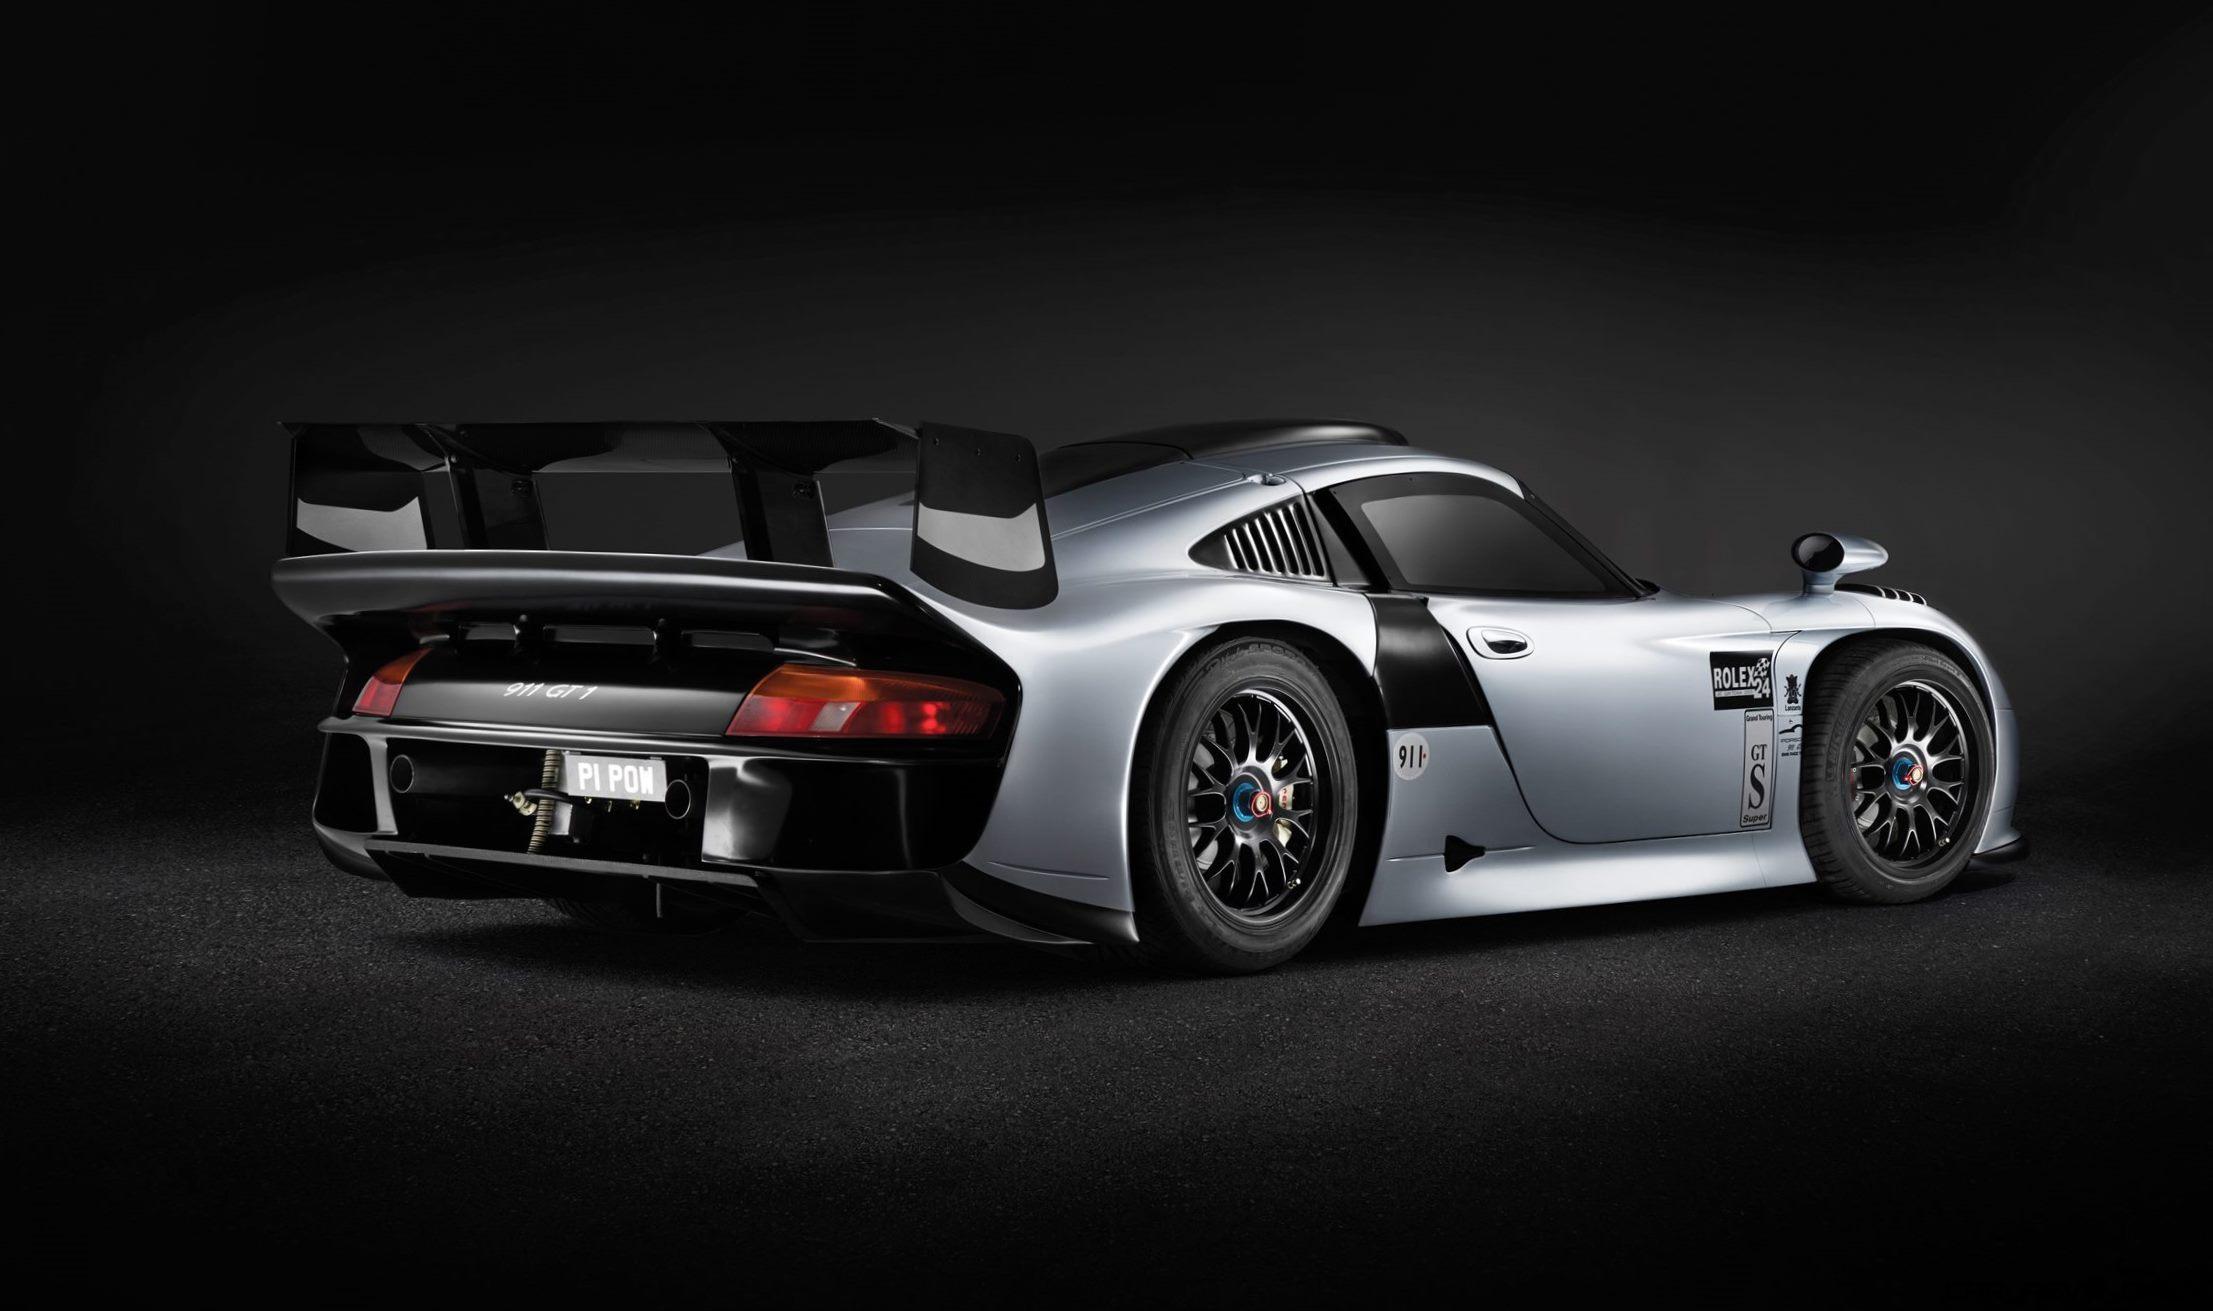 1997 Porsche 911 GT1 Evolution